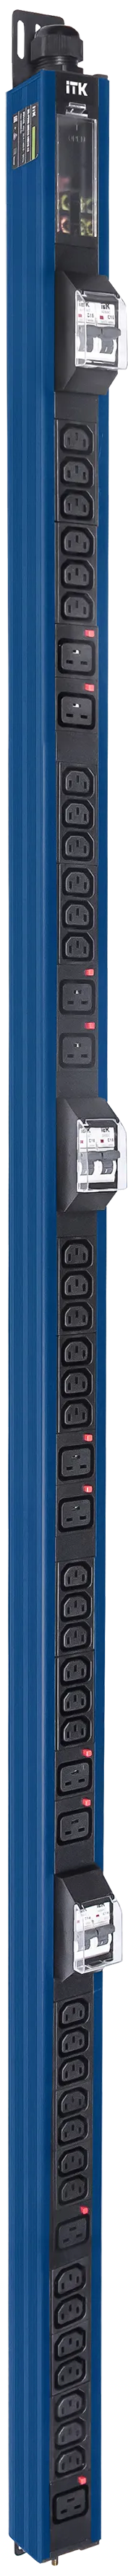 Вертикальный комбинированный блок распределения питания PDU ITK в синем корпусе включает в себя розетки двух типов: 38 розеток C13 и 10 розеток C19 – что позволяет подключать с их помощью различное оборудование. PDU ITK изготавливается из высококачественных термостойких материалов и пластмасс, оснащается 6 метровым кабелем электропитания с вилкой промышленного назначения IEC60309. PDU ITK прекрасно справляется с задачей по электроснабжению сетевого оборудования в шкафах и стойках, а также с требованием защиты от токов короткого замыкания и перенапряжения. PDU ITK соответствует российским и международным стандартам качества и устанавливается с помощью кронштейнов, при этом положение кронштейнов можно менять, либо безынструментальным методом при помощи монтажных штифтов. 